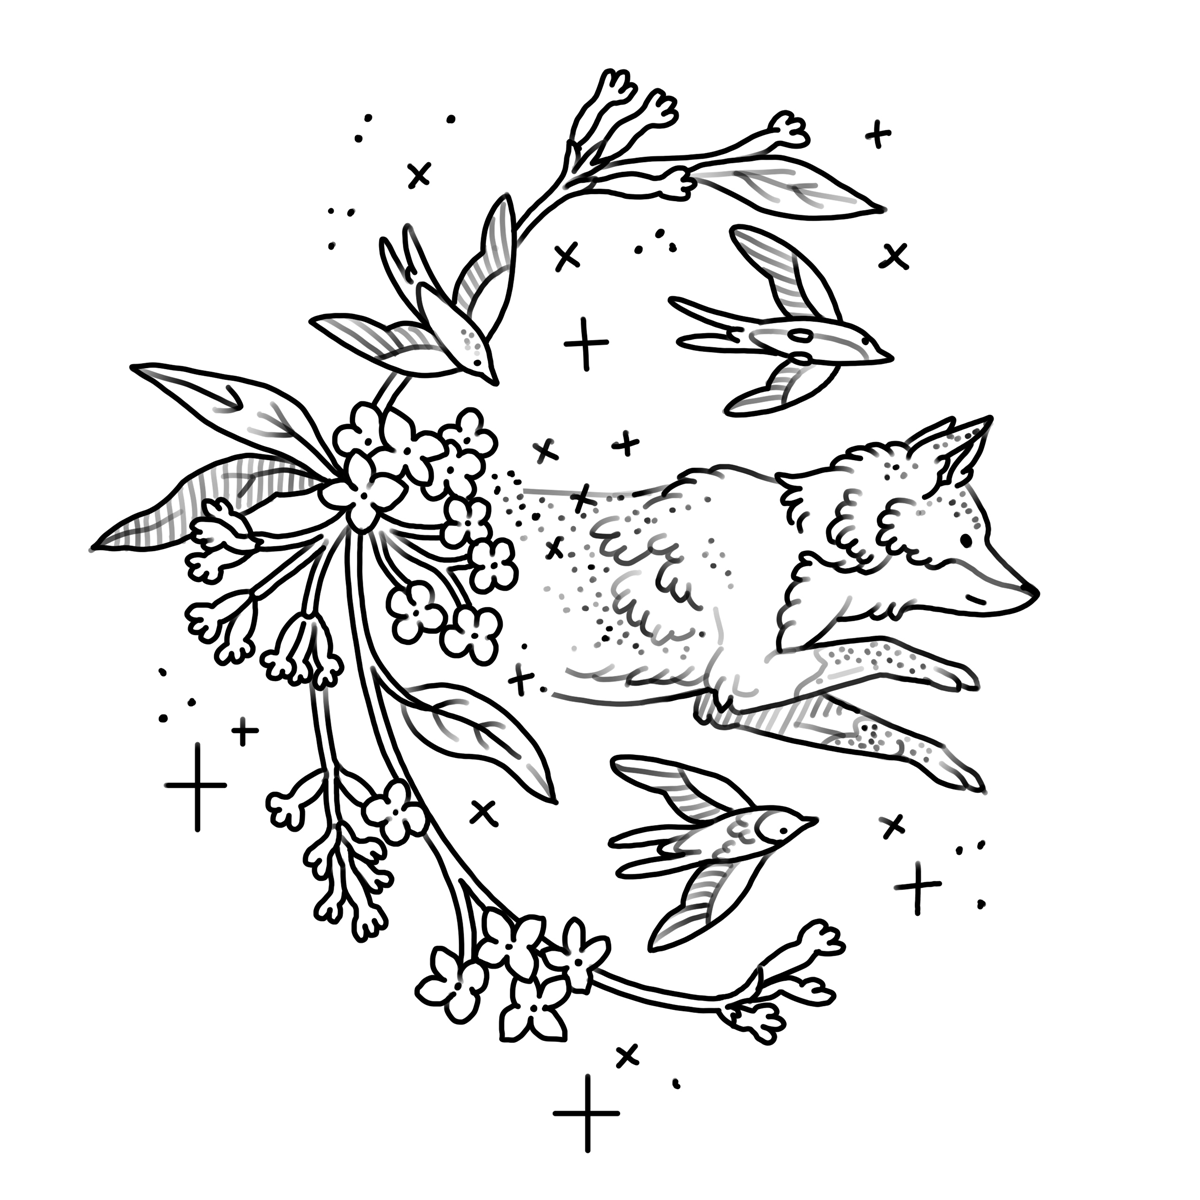 Fox + Lilac + Sparrows